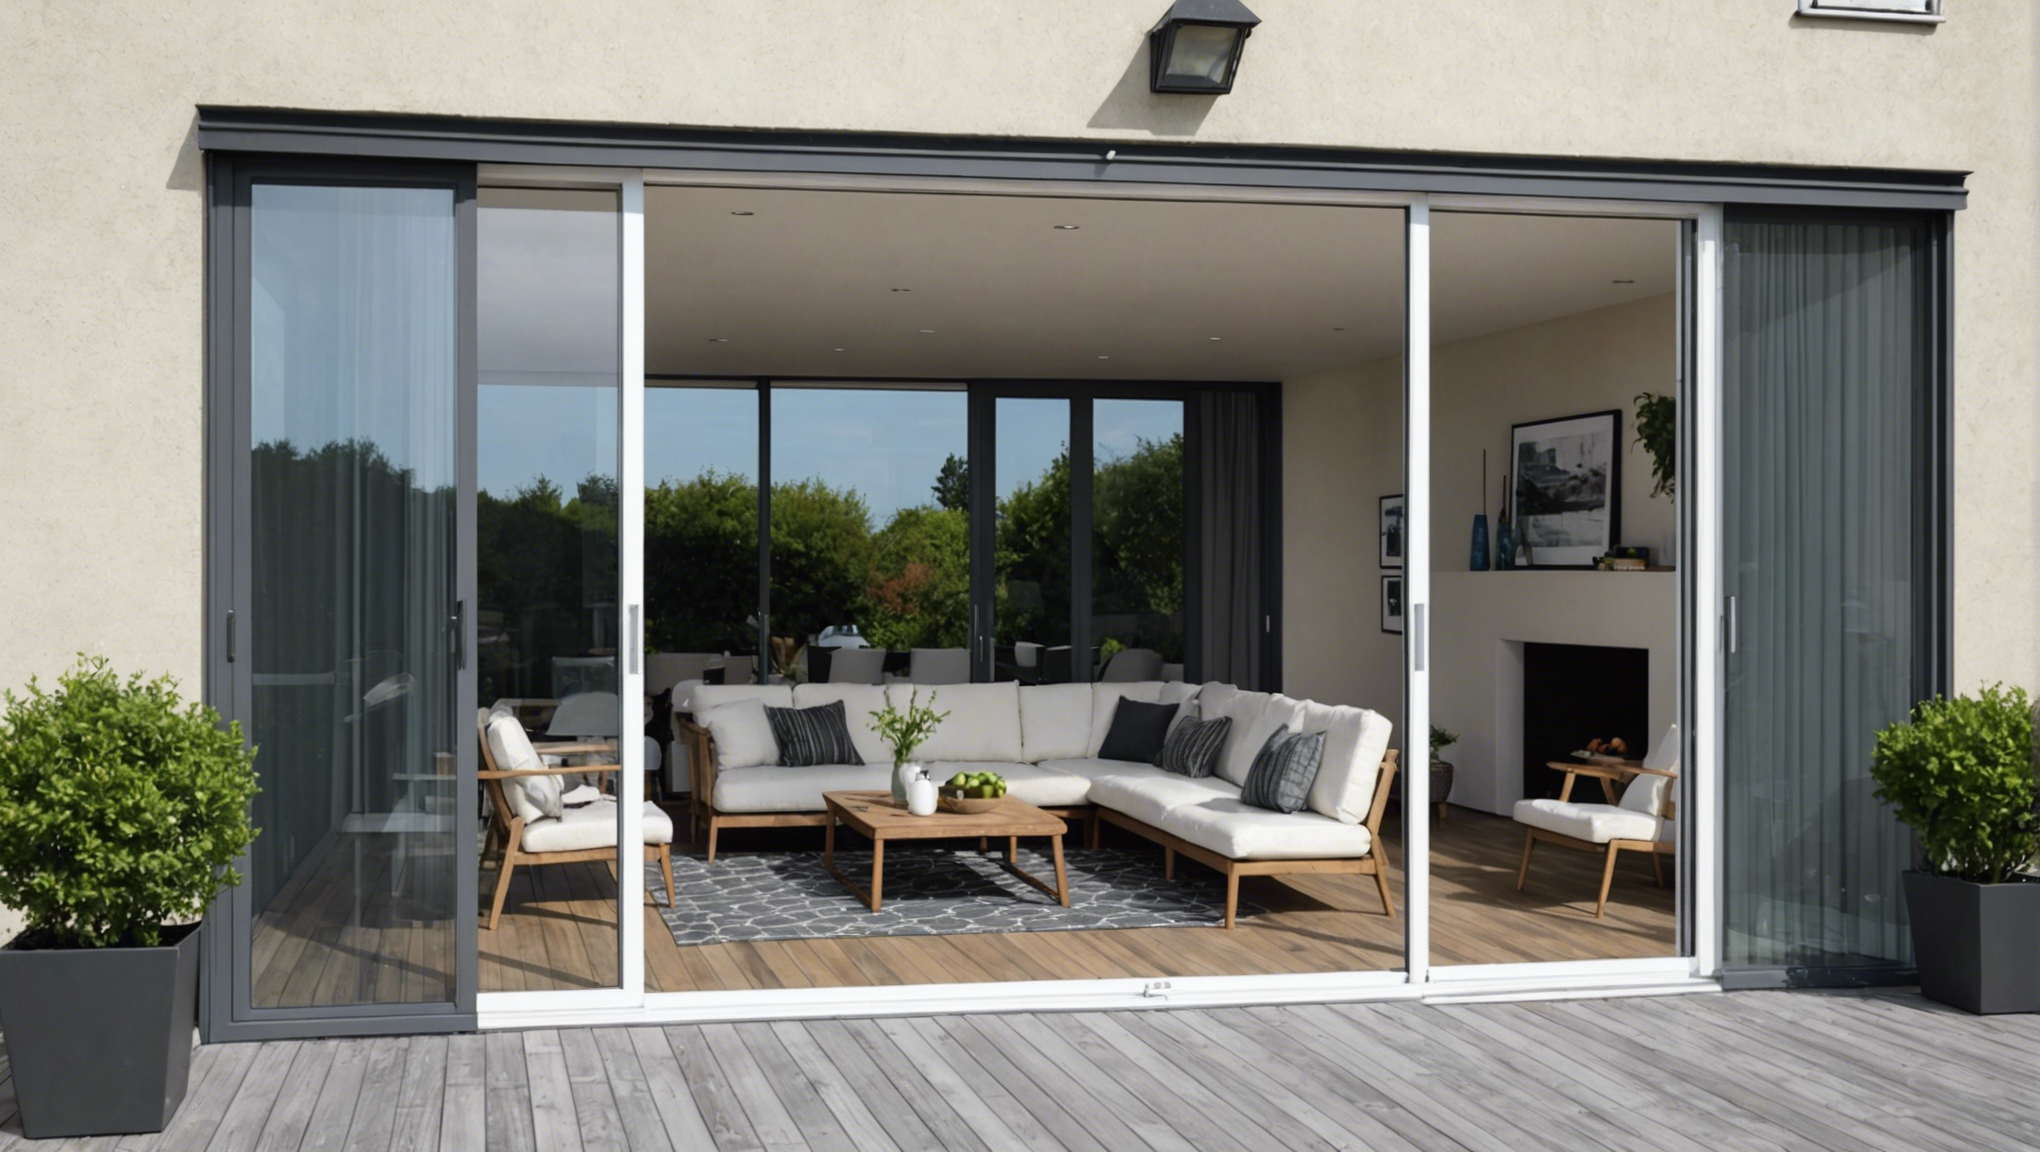 découvrez comment choisir la meilleure fenêtre coulissante pour votre maison avec nos conseils pratiques et nos recommandations de produits de qualité.